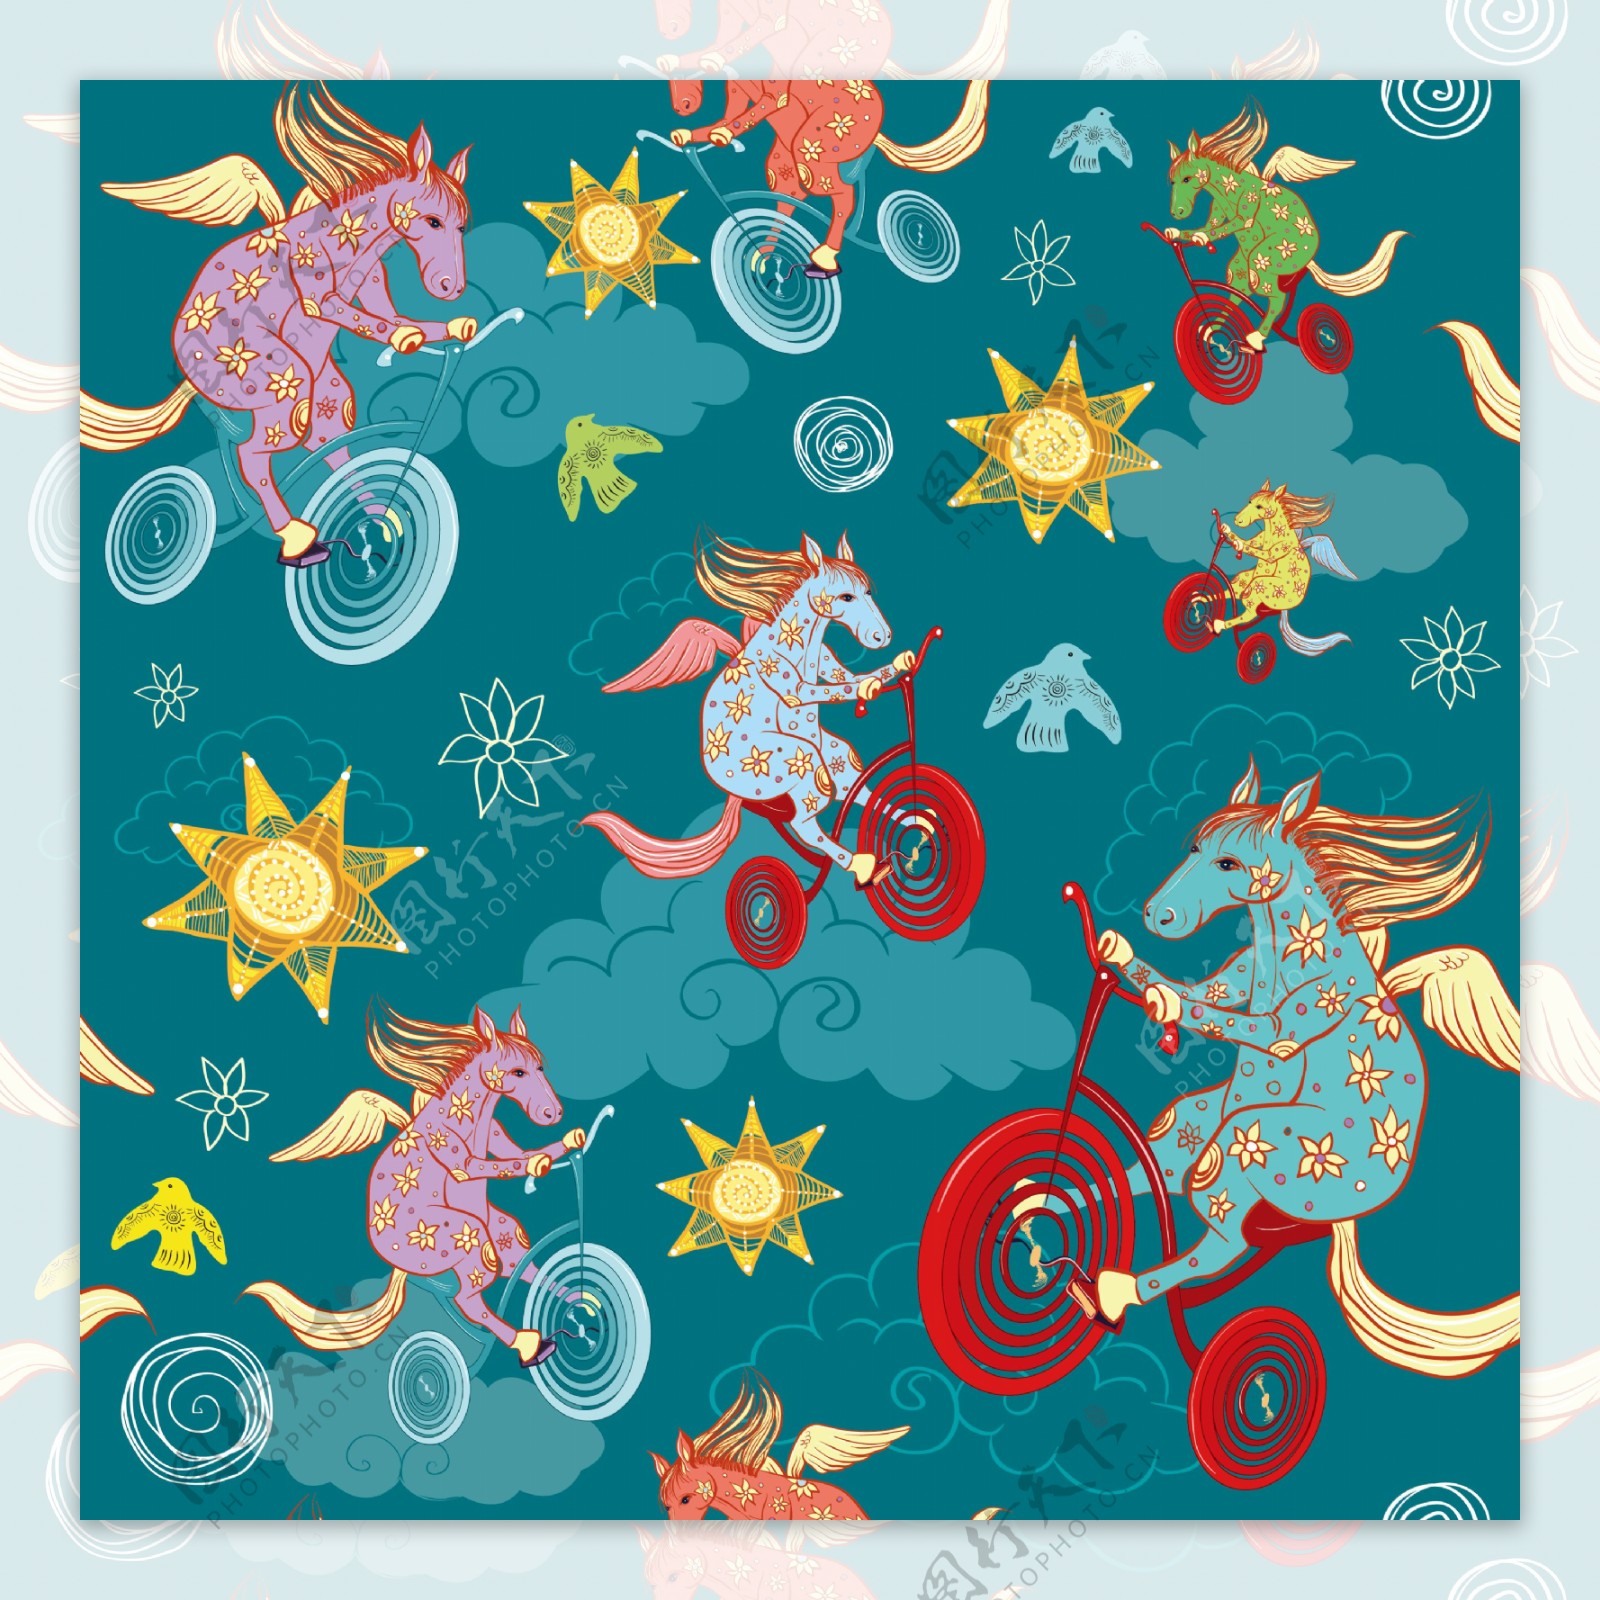 高级玄幻动物骑车壁纸图案装饰设计